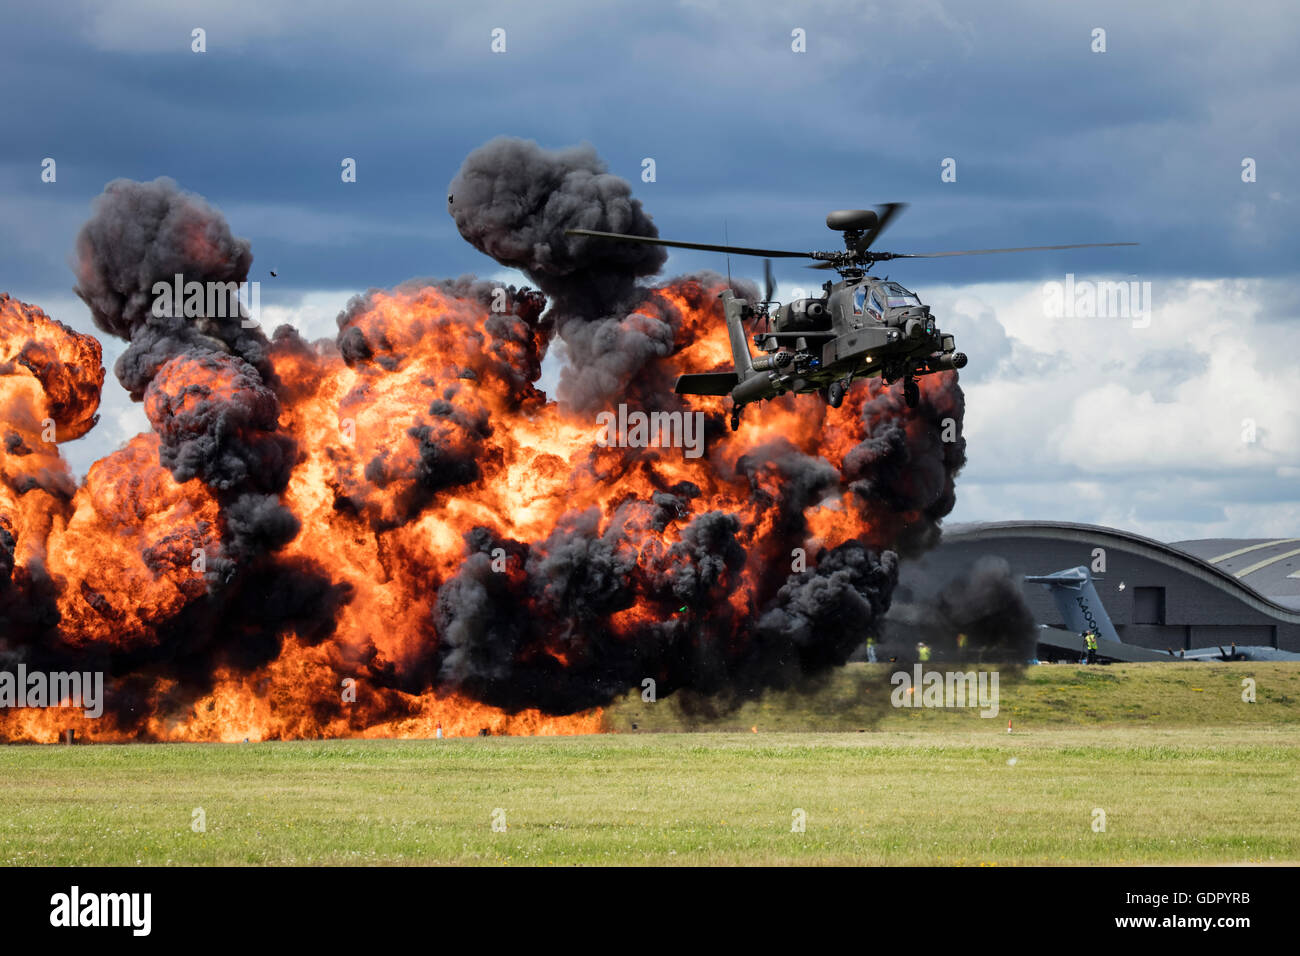 Britische Armee-Apache-Hubschrauber Übung mit schwarzer Rauch und Flammen. Klingen der Hubschrauber leicht blurred4 Gefühl der Bewegung Stockfoto